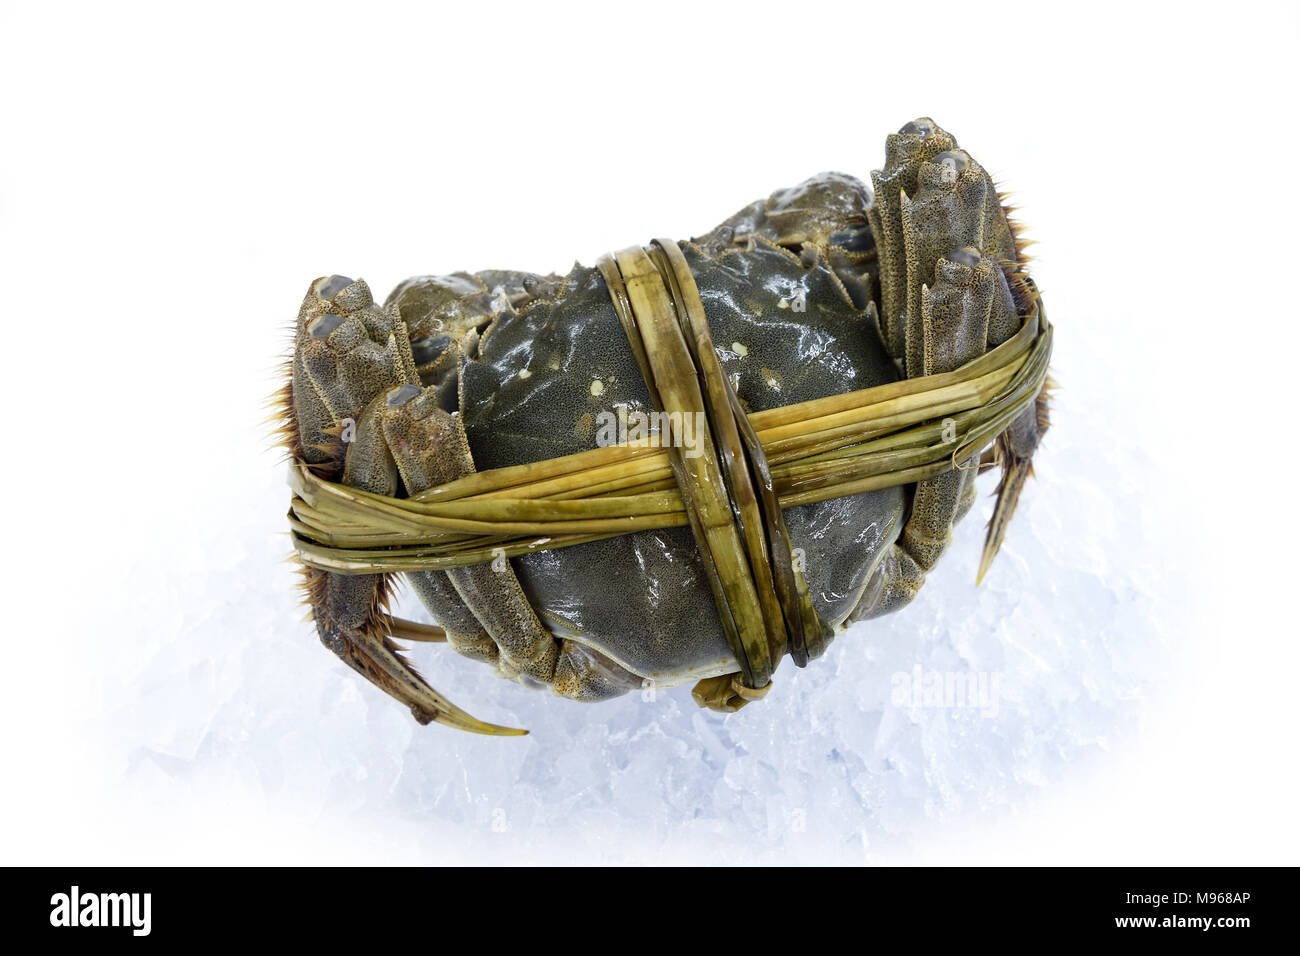 Crabe poilu shanghai brut isolé sur fond blanc Banque D'Images